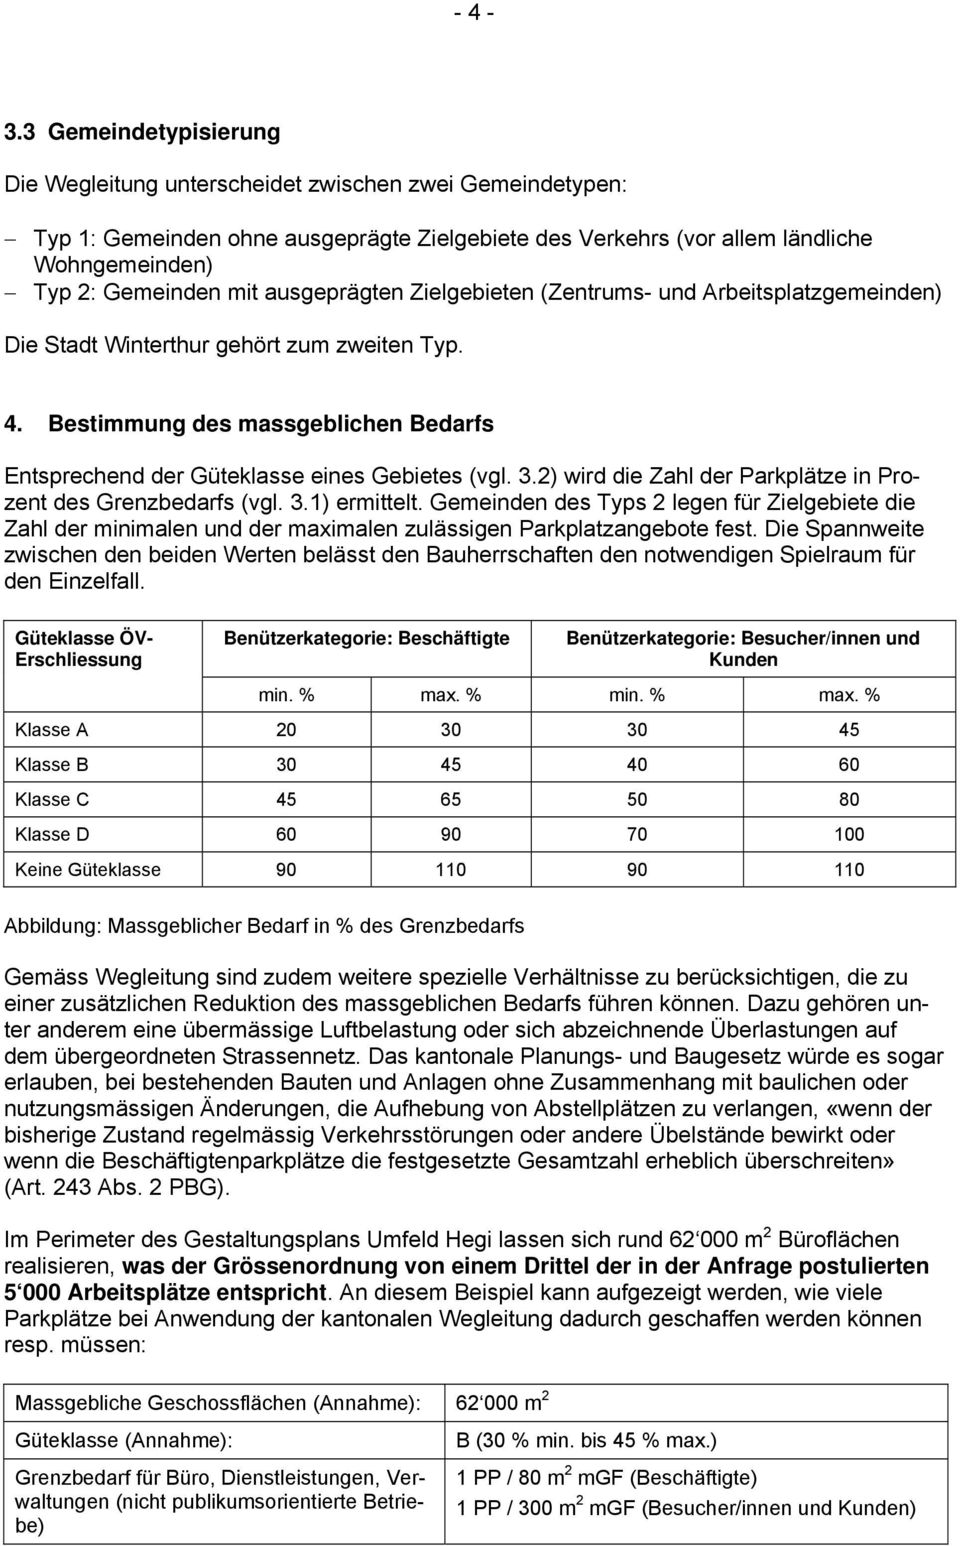 ausgeprägten Zielgebieten (Zentrums- und Arbeitsplatzgemeinden) Die Stadt Winterthur gehört zum zweiten Typ. 4. Bestimmung des massgeblichen Bedarfs Entsprechend der Güteklasse eines Gebietes (vgl. 3.